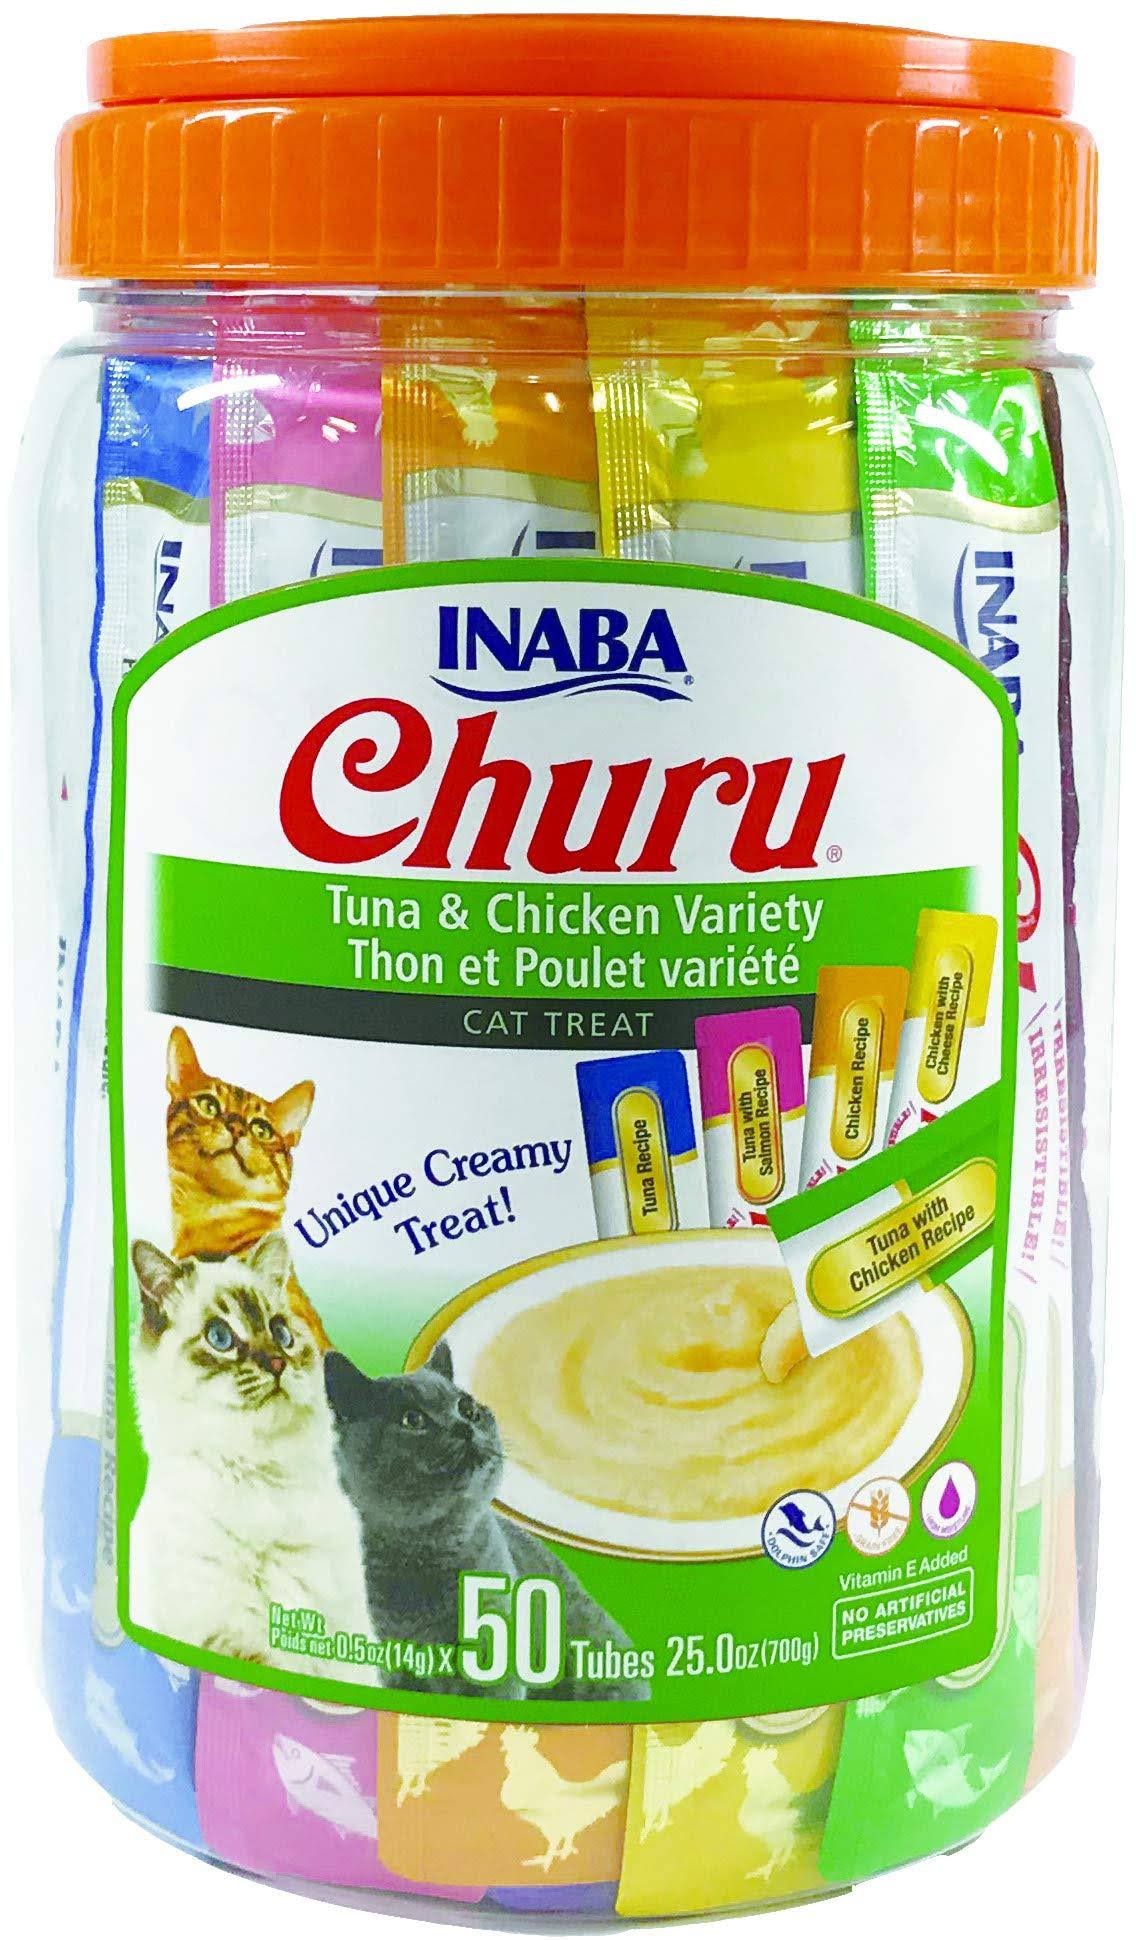 Churu Tuna & Chicken Puree Cat Treat Variety Pack, 50-ct